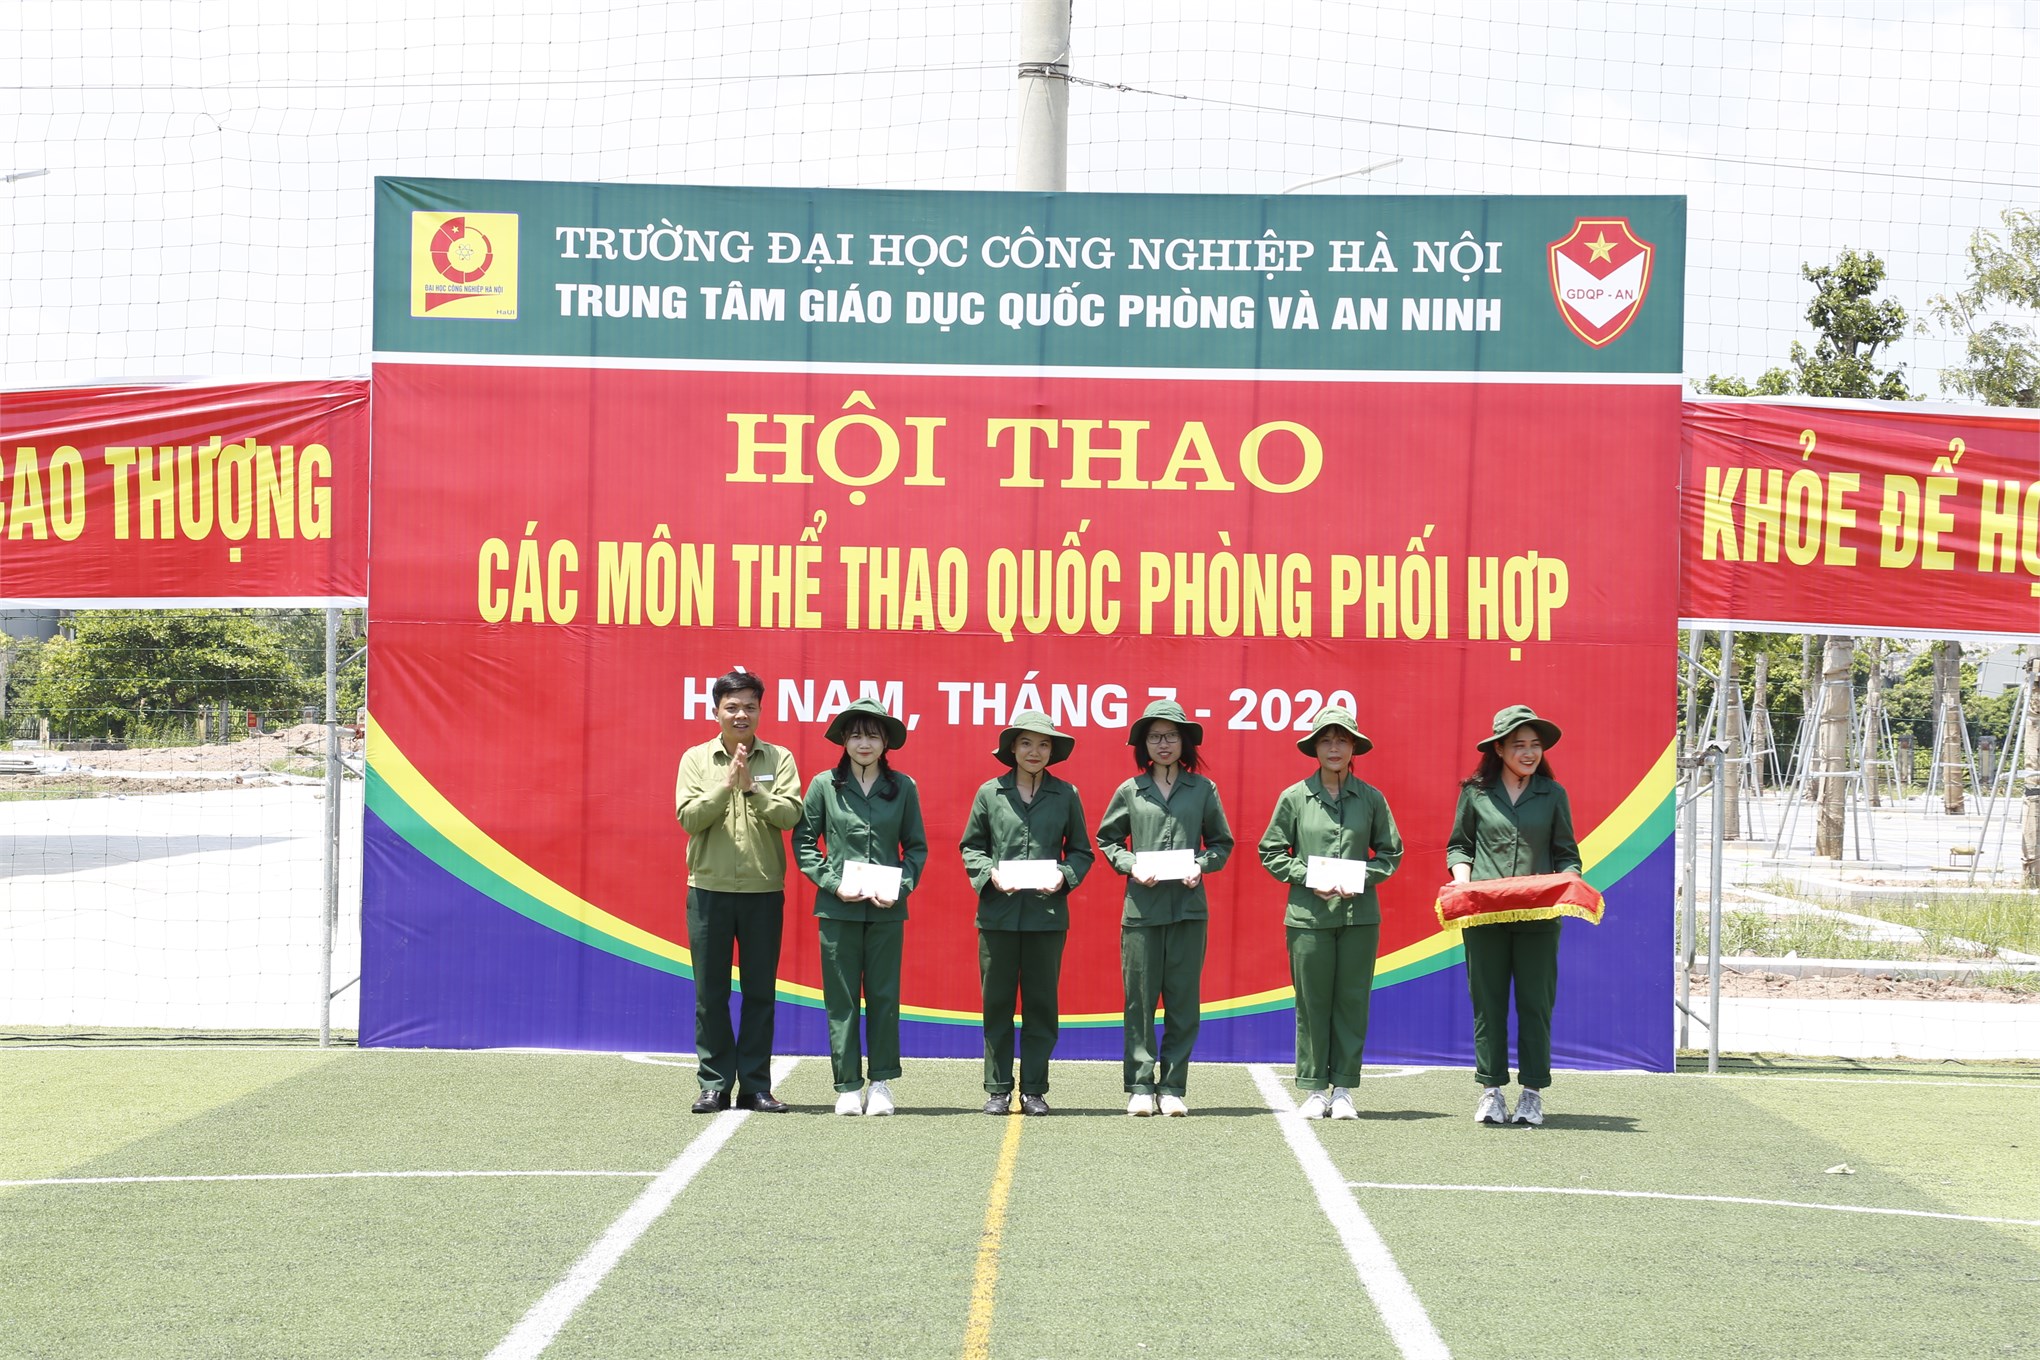 Hội thao các môn thể thao quốc phòng phối hợp và giao lưu văn nghệ tại Trung tâm GDQP&AN trường Đại học Công nghiệp Hà Nội